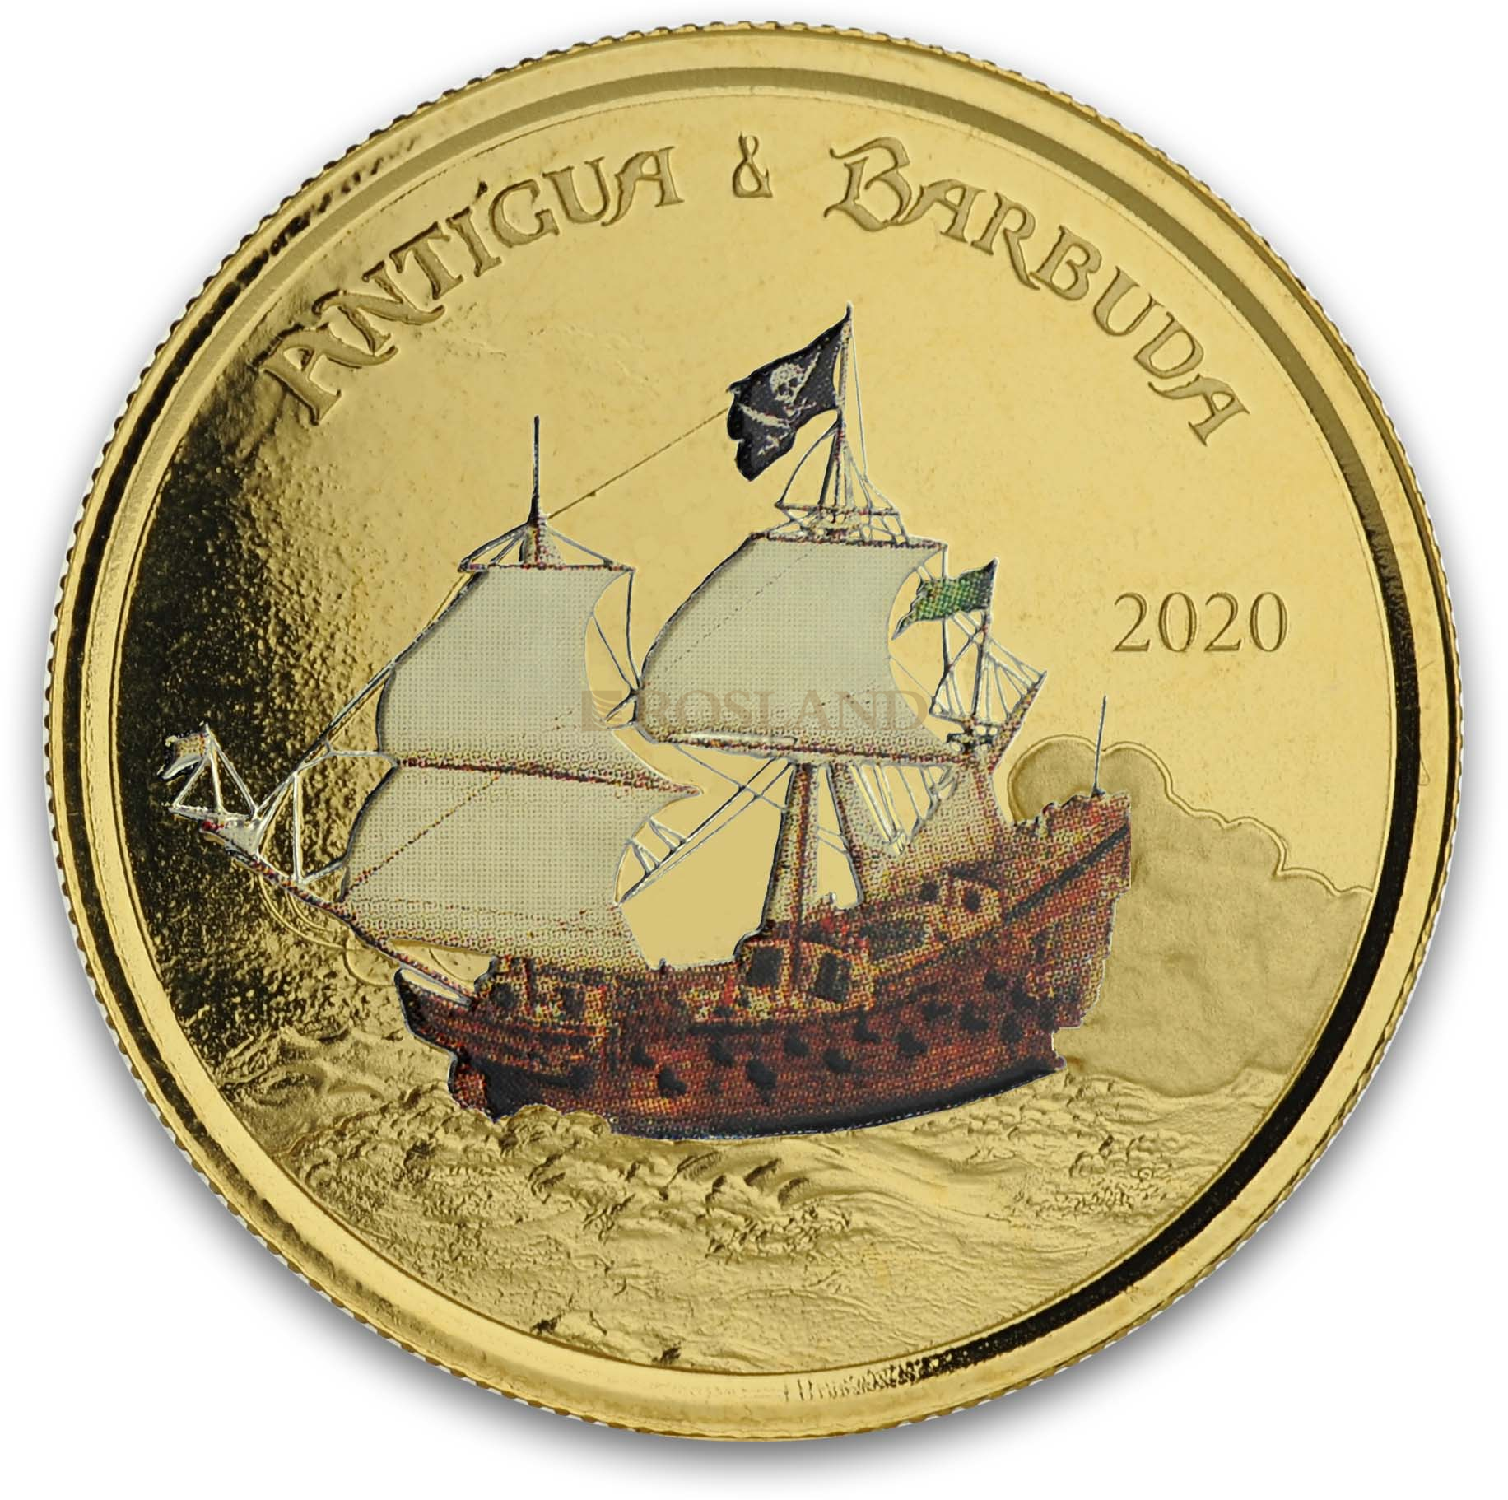 1 Unze Goldmünze EC8 Antigua & Barbuda Rum Runner 2020 PP (Koloriert, Box, Zertifikat)